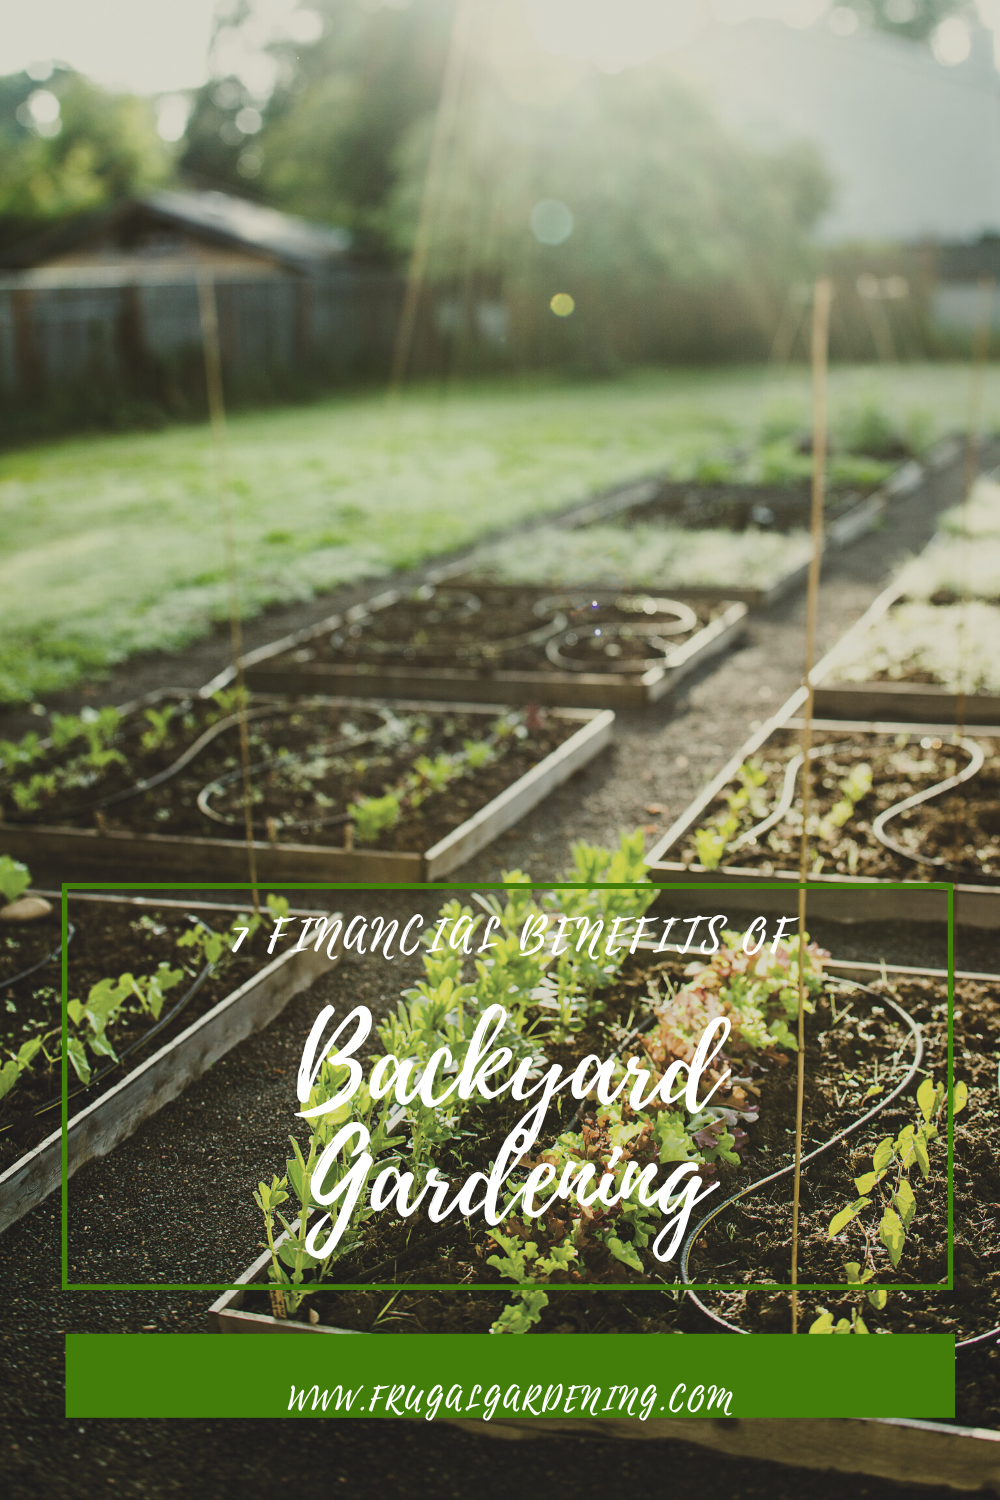 7 Financial Benefits of Backyard Gardening